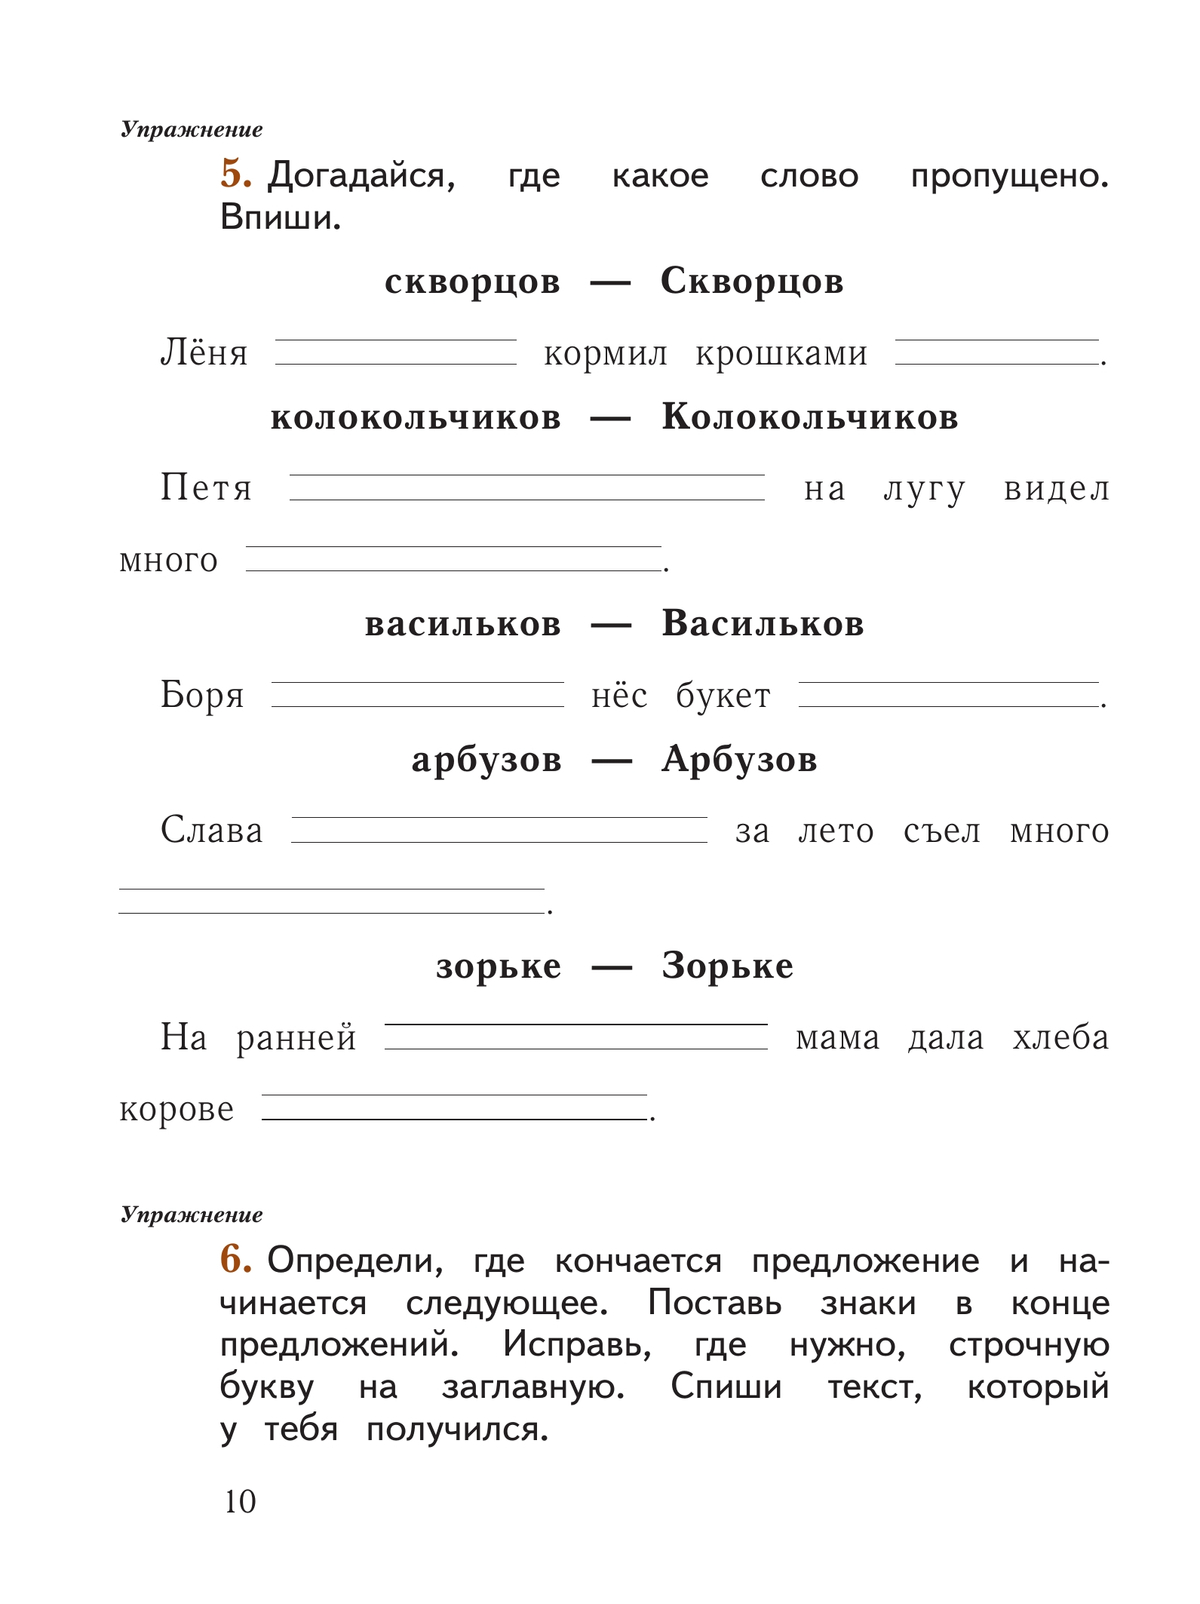 Русский язык. 1 класс. Рабочая тетрадь. В 2 частях. Часть 2 2